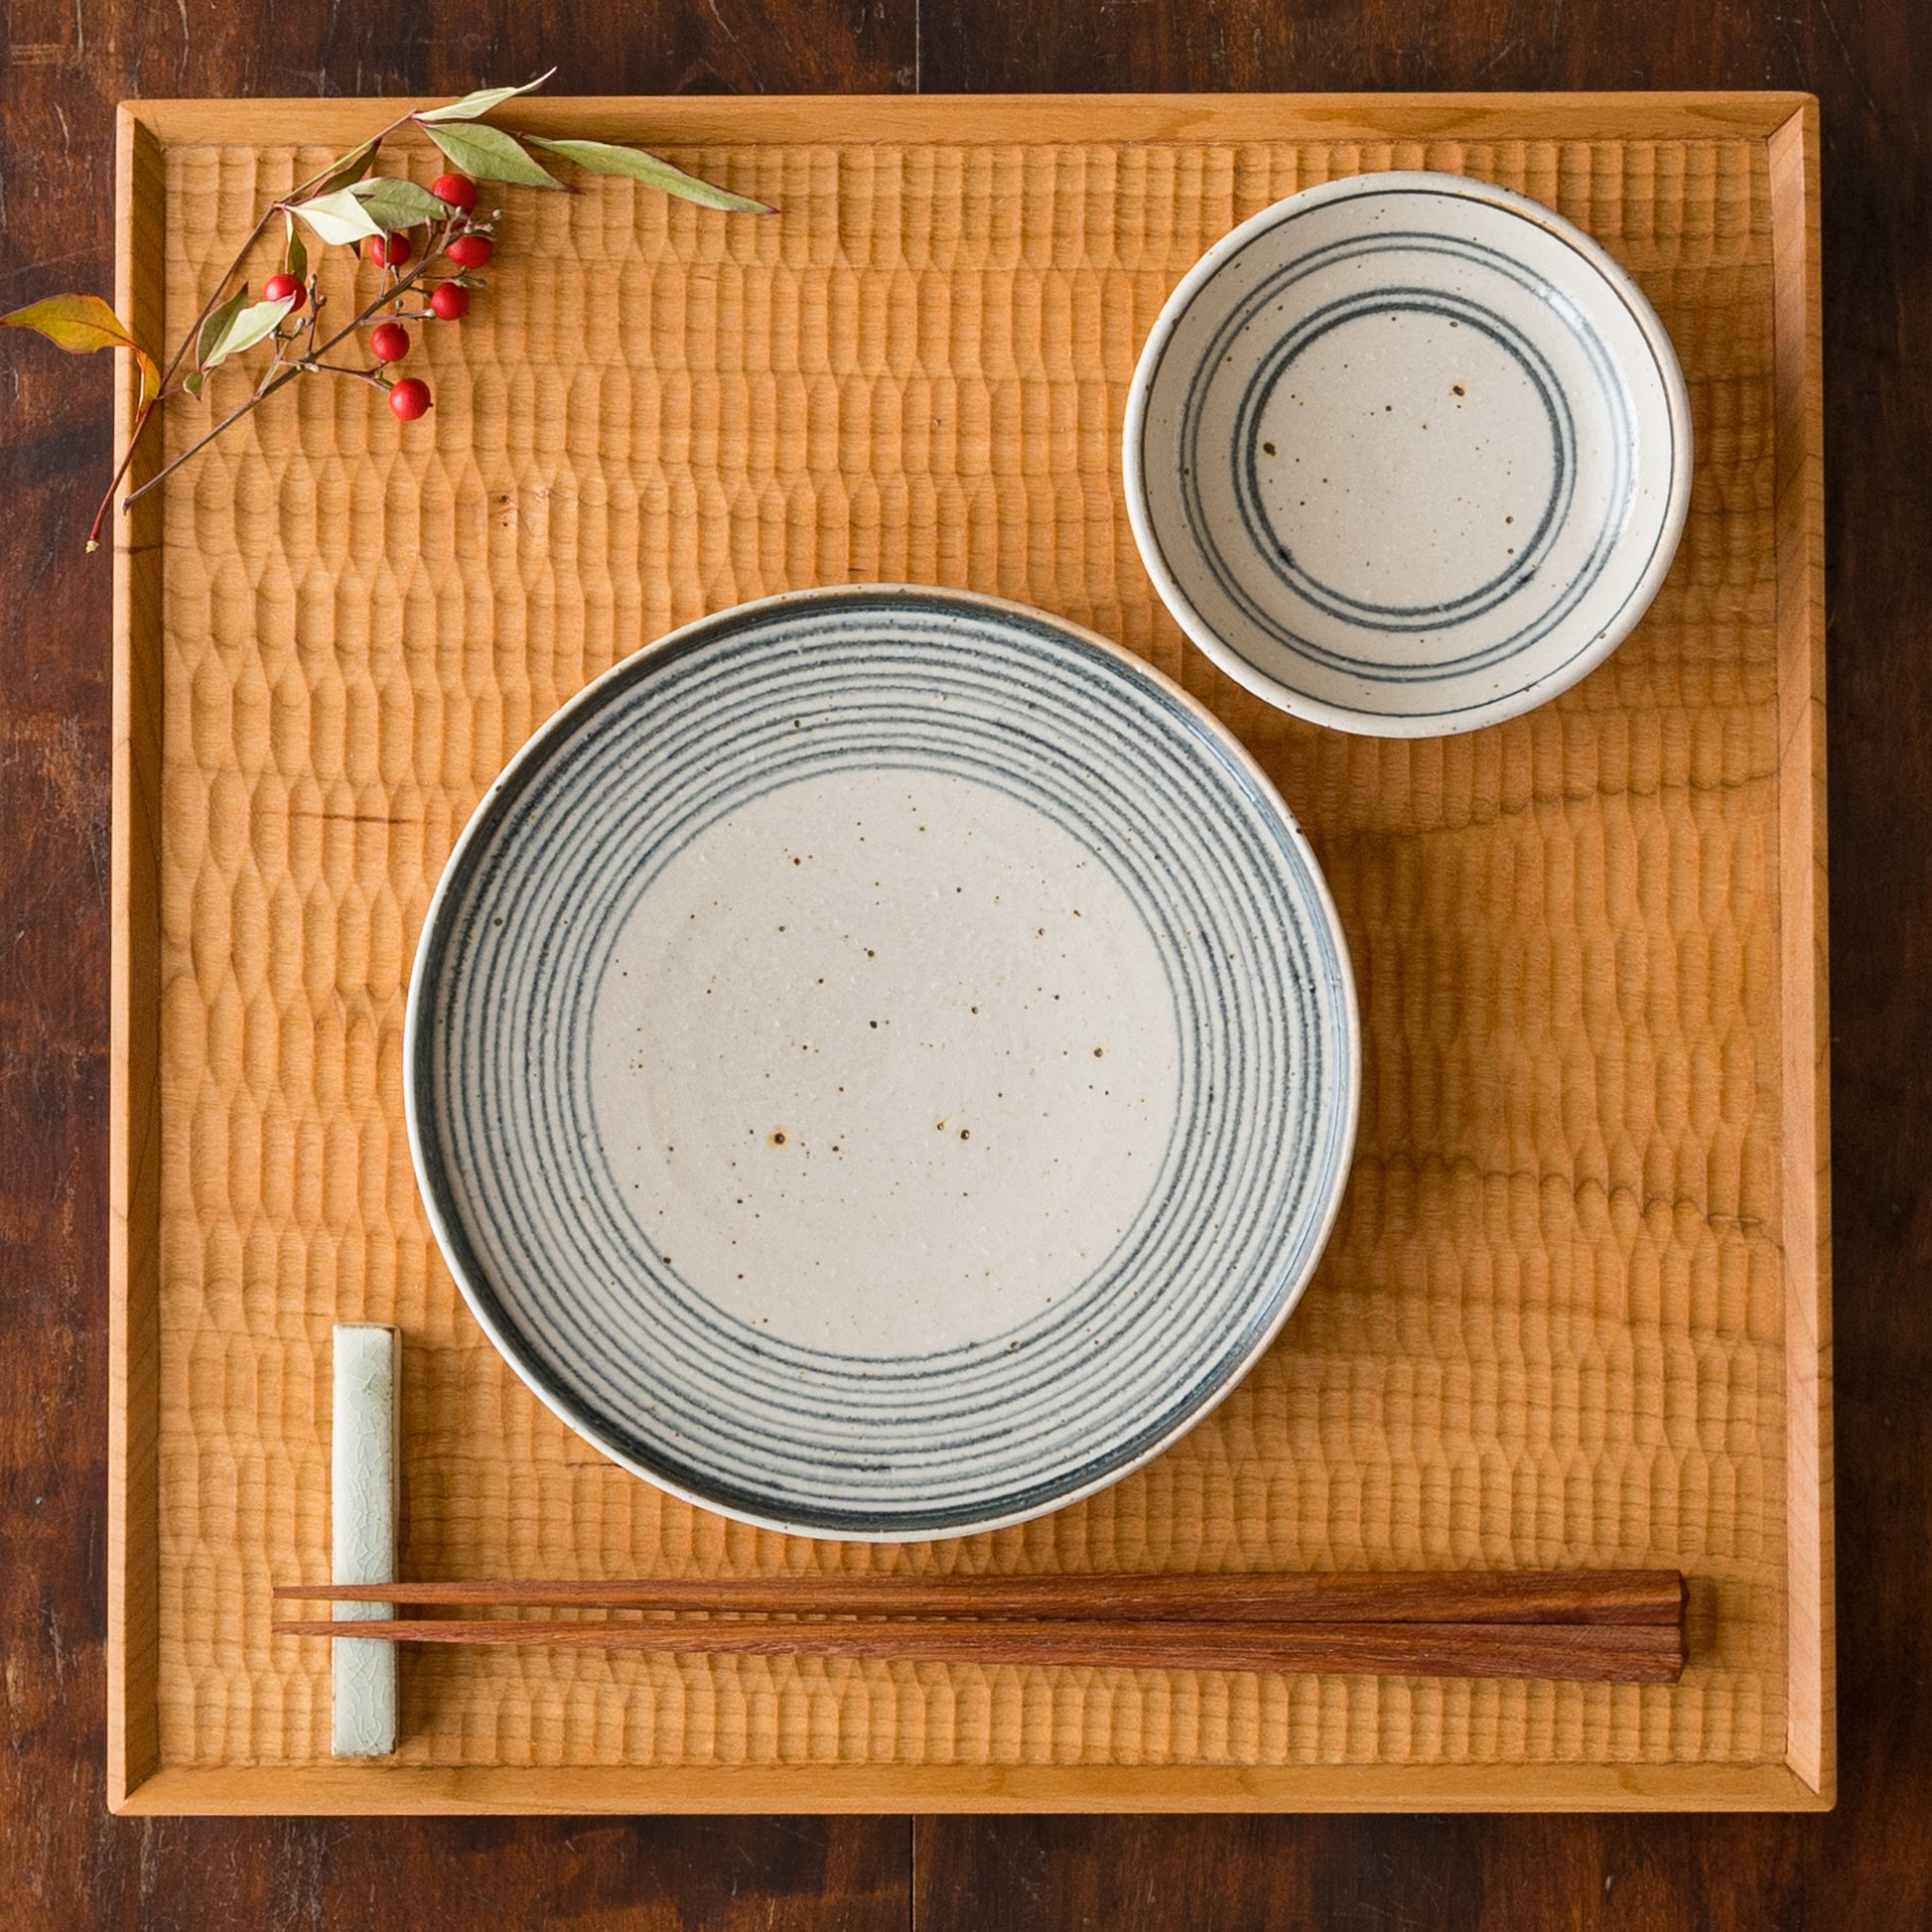 ゆっくり楽しい食事を楽しめる冨本大輔さんの灰釉染付7寸平皿と3寸皿